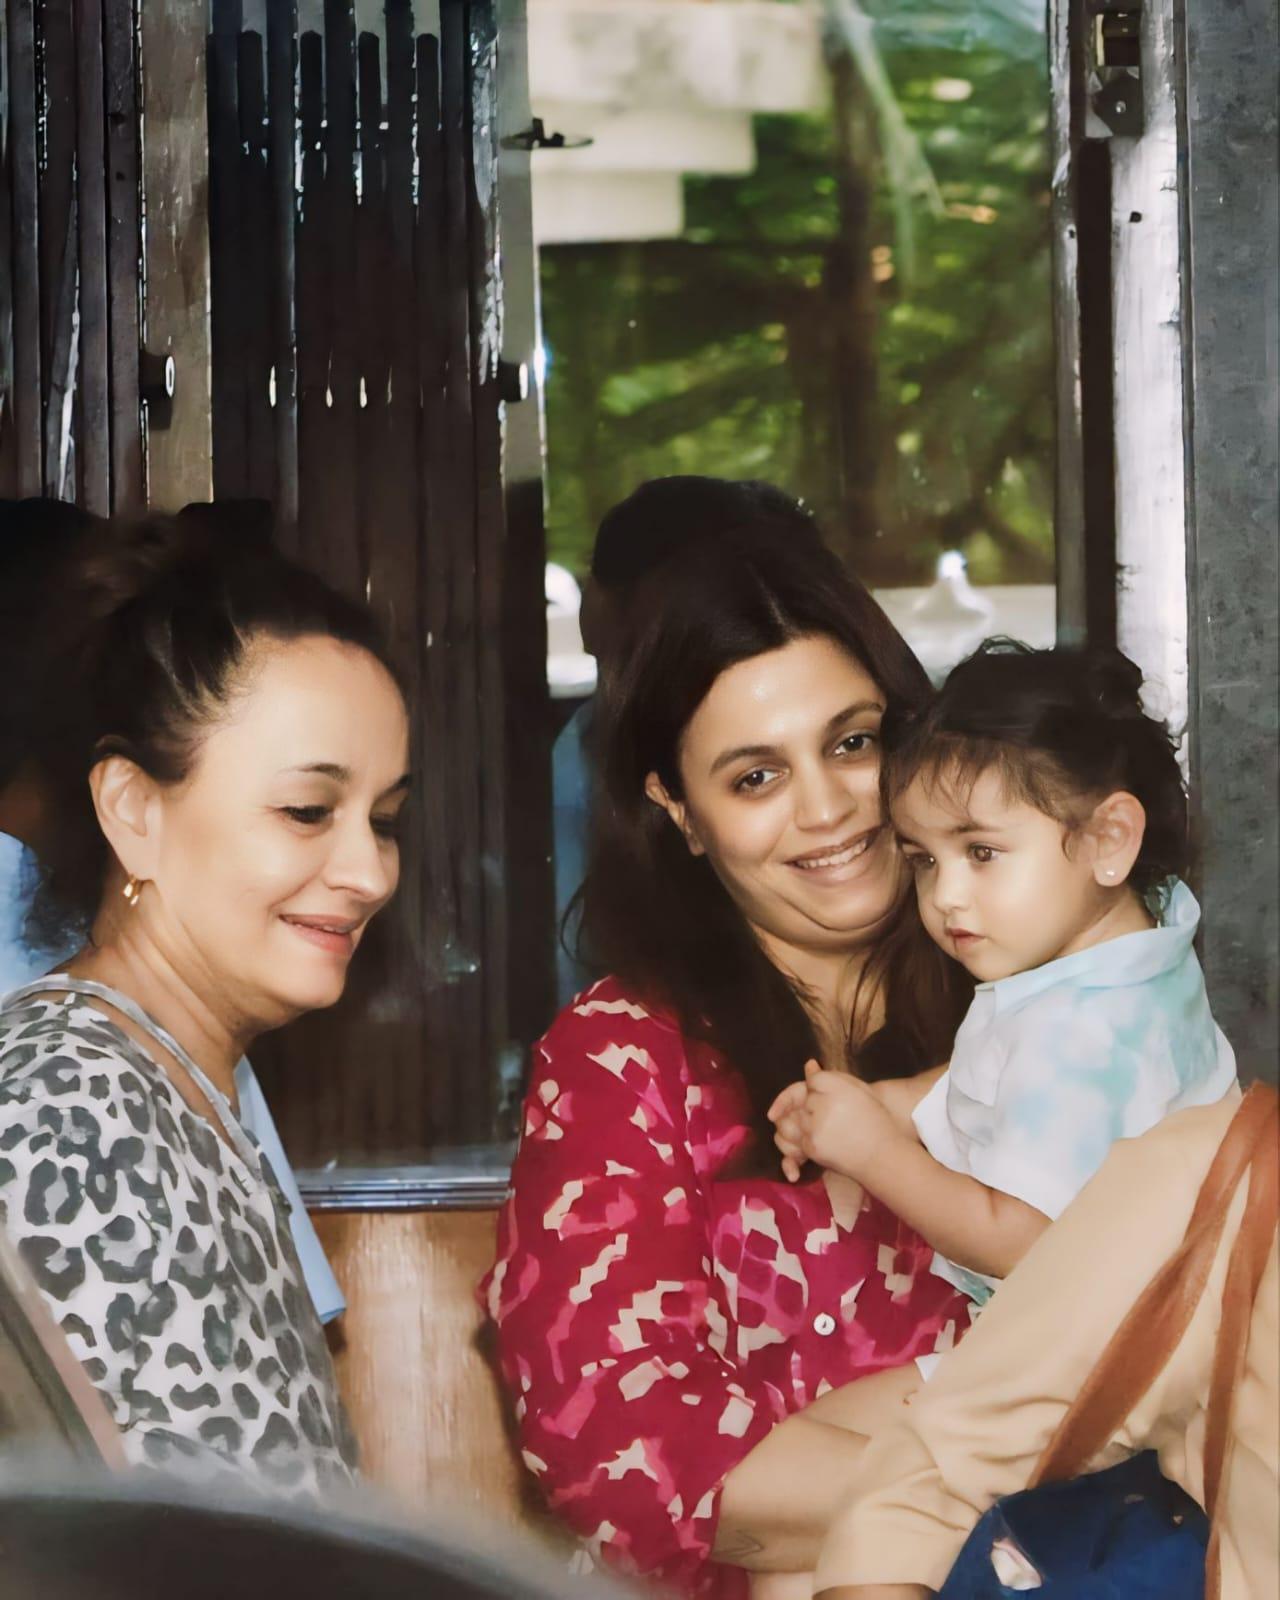 Shaheen Bhatt and Soni Razdan were spotted with Alia Bhatt's daughter Raha in Mumbai today